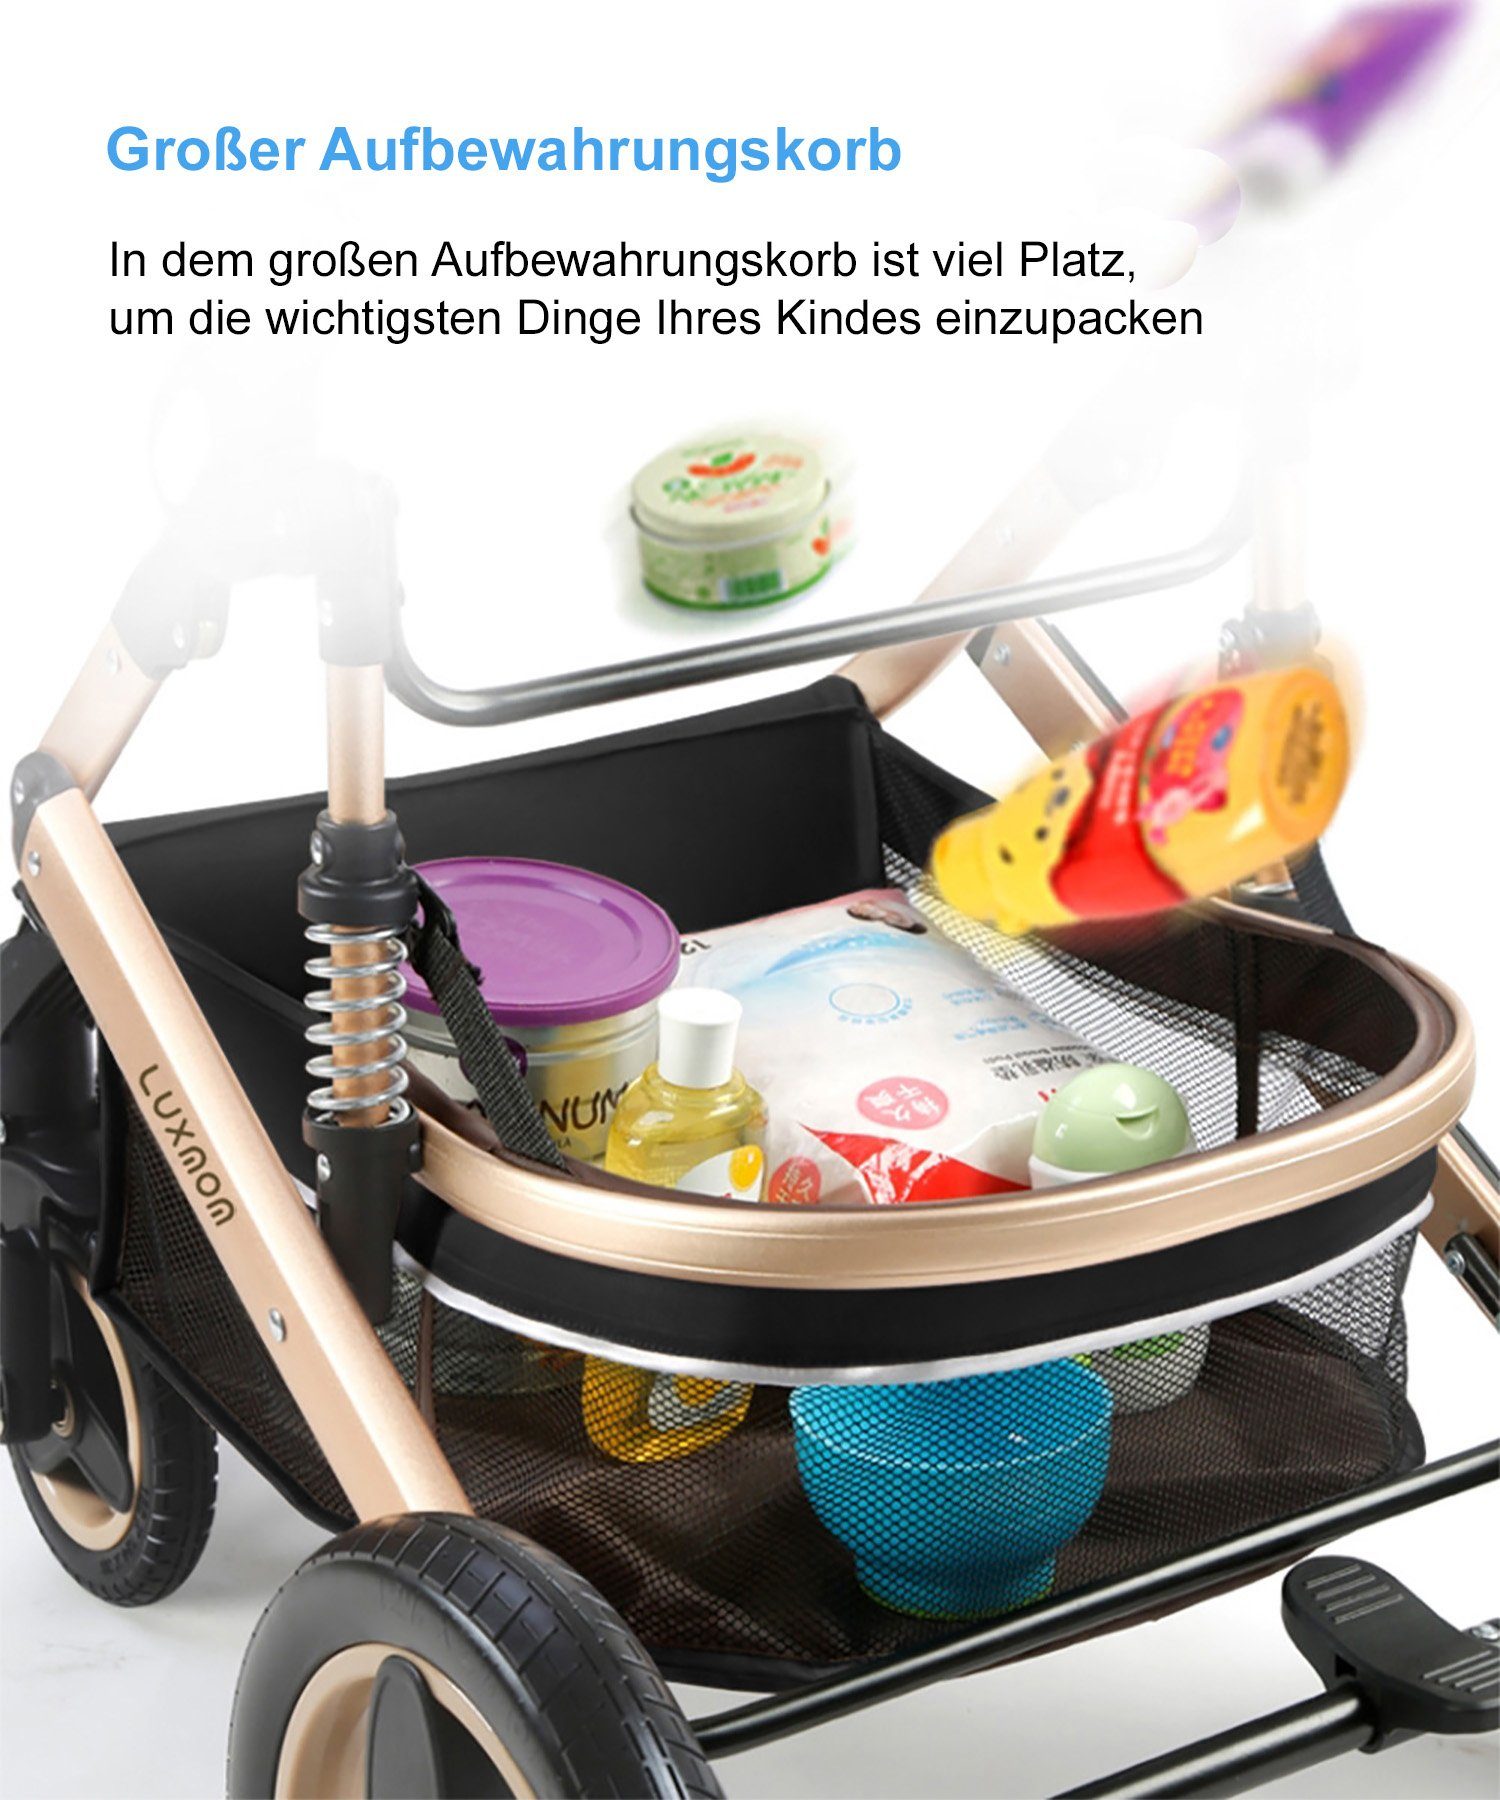 TPFLiving Kombi-Kinderwagen Baby Buggy Babyschale mit 3 Sicherheitsschlaufe 5-Punkt-Sicherheitsgurt 1 Kinderwagen Babywanne Stoßfederung- in Getränkehalter, Khaki